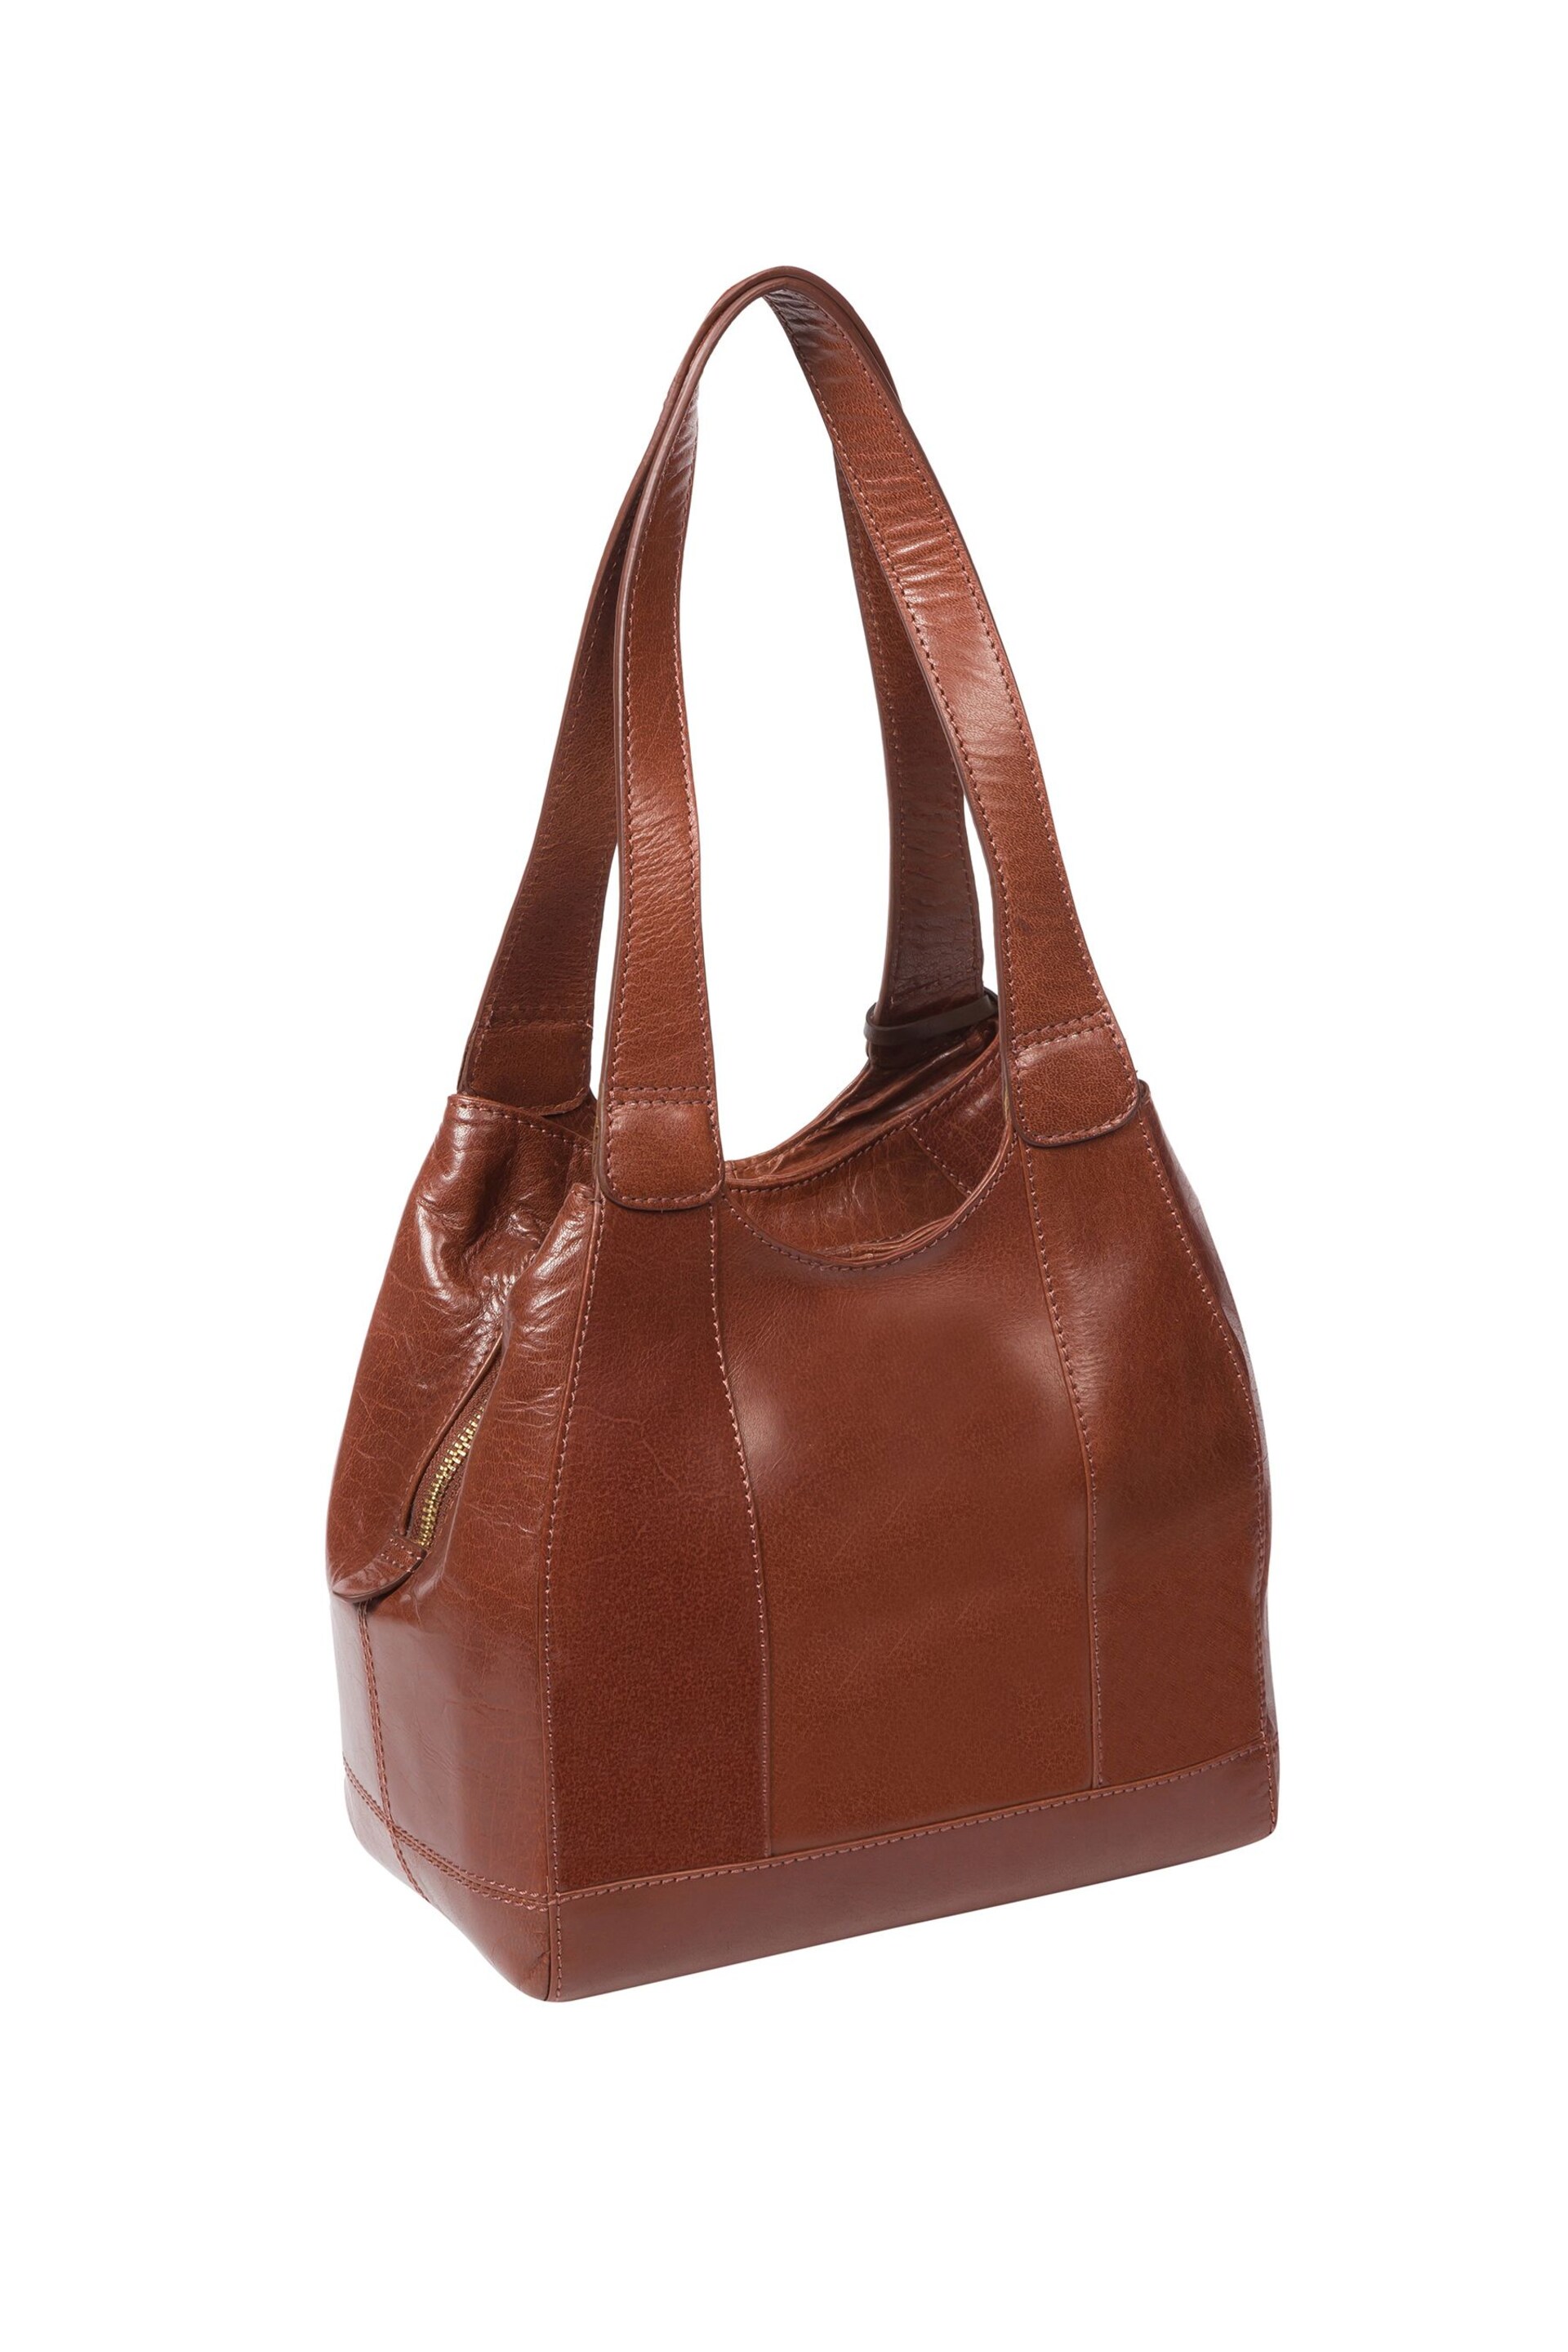 Conkca Juliet Handbag - Image 4 of 6